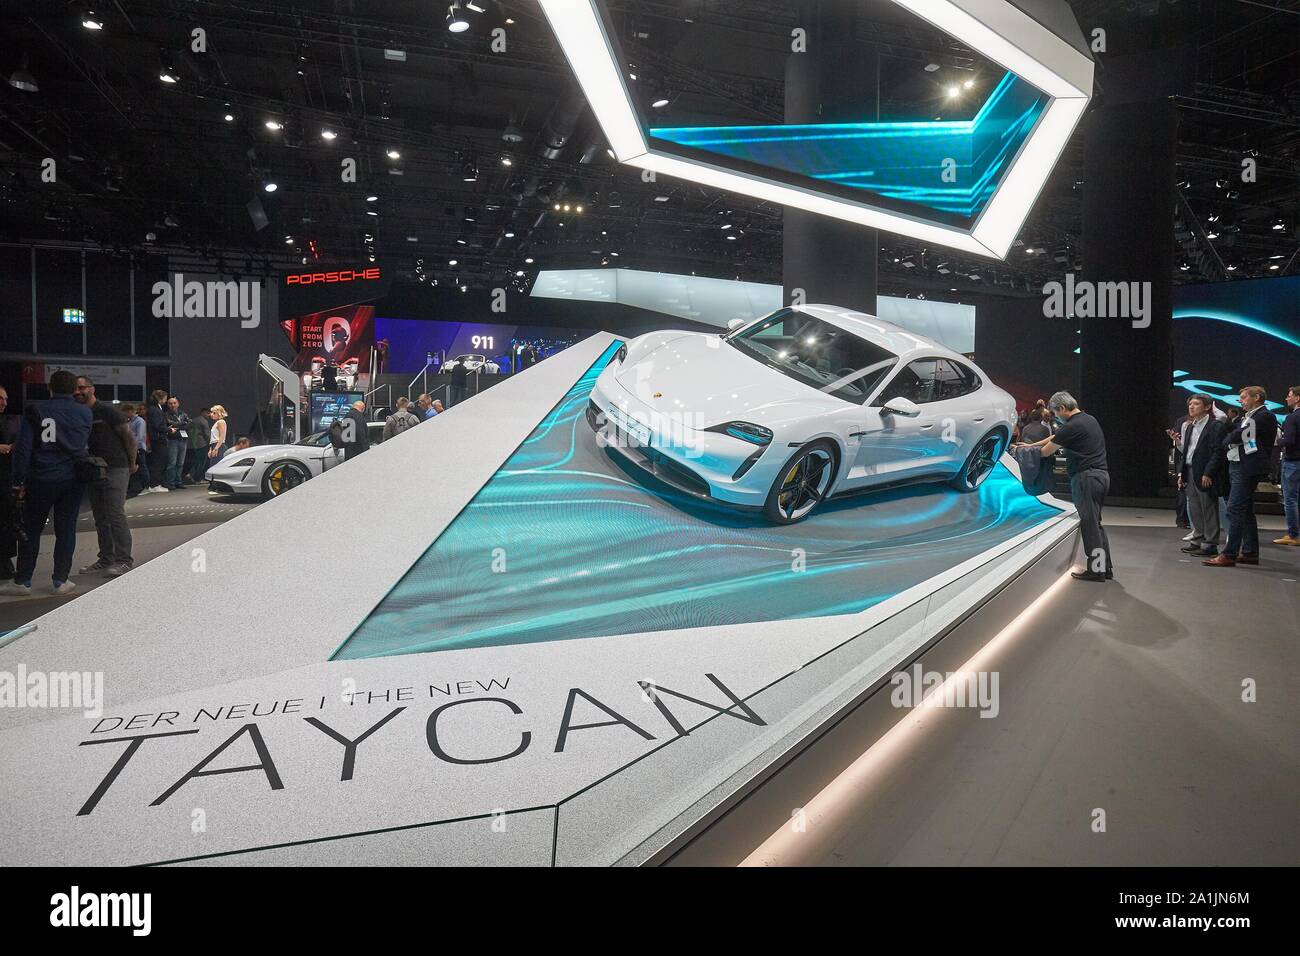 Porsche présente la voiture de sport électrique Taycan à l'IAA, Francfort, Allemagne Banque D'Images